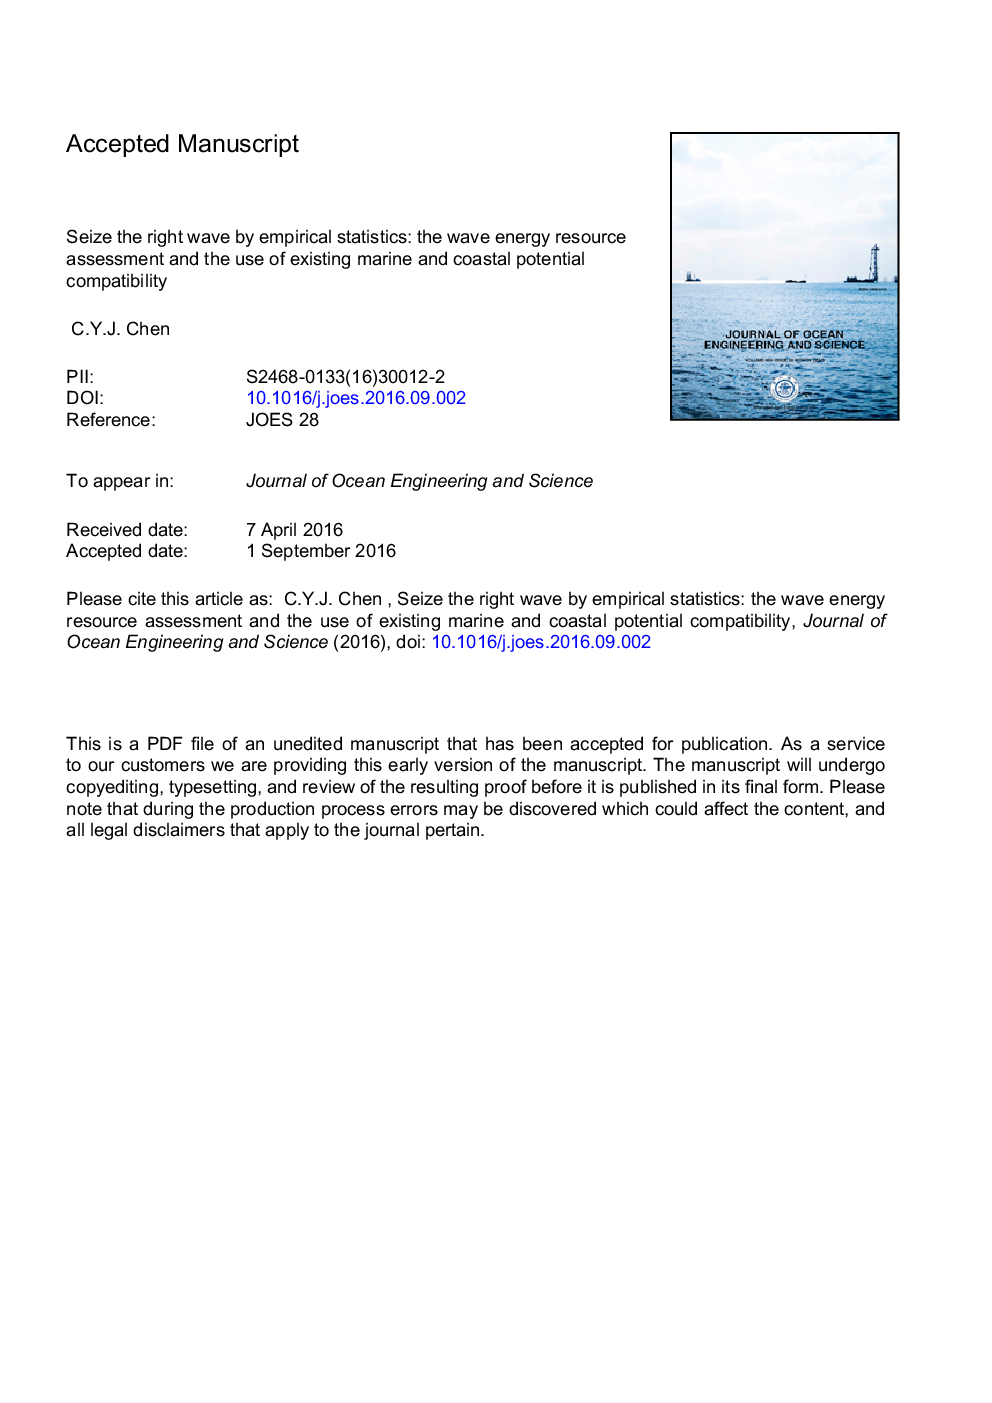 تعیین موج راست با استفاده از آمار تجربی: ارزیابی منابع انرژی موج و بررسی سازگاری پتانسیل دریایی و ساحلی موجود 